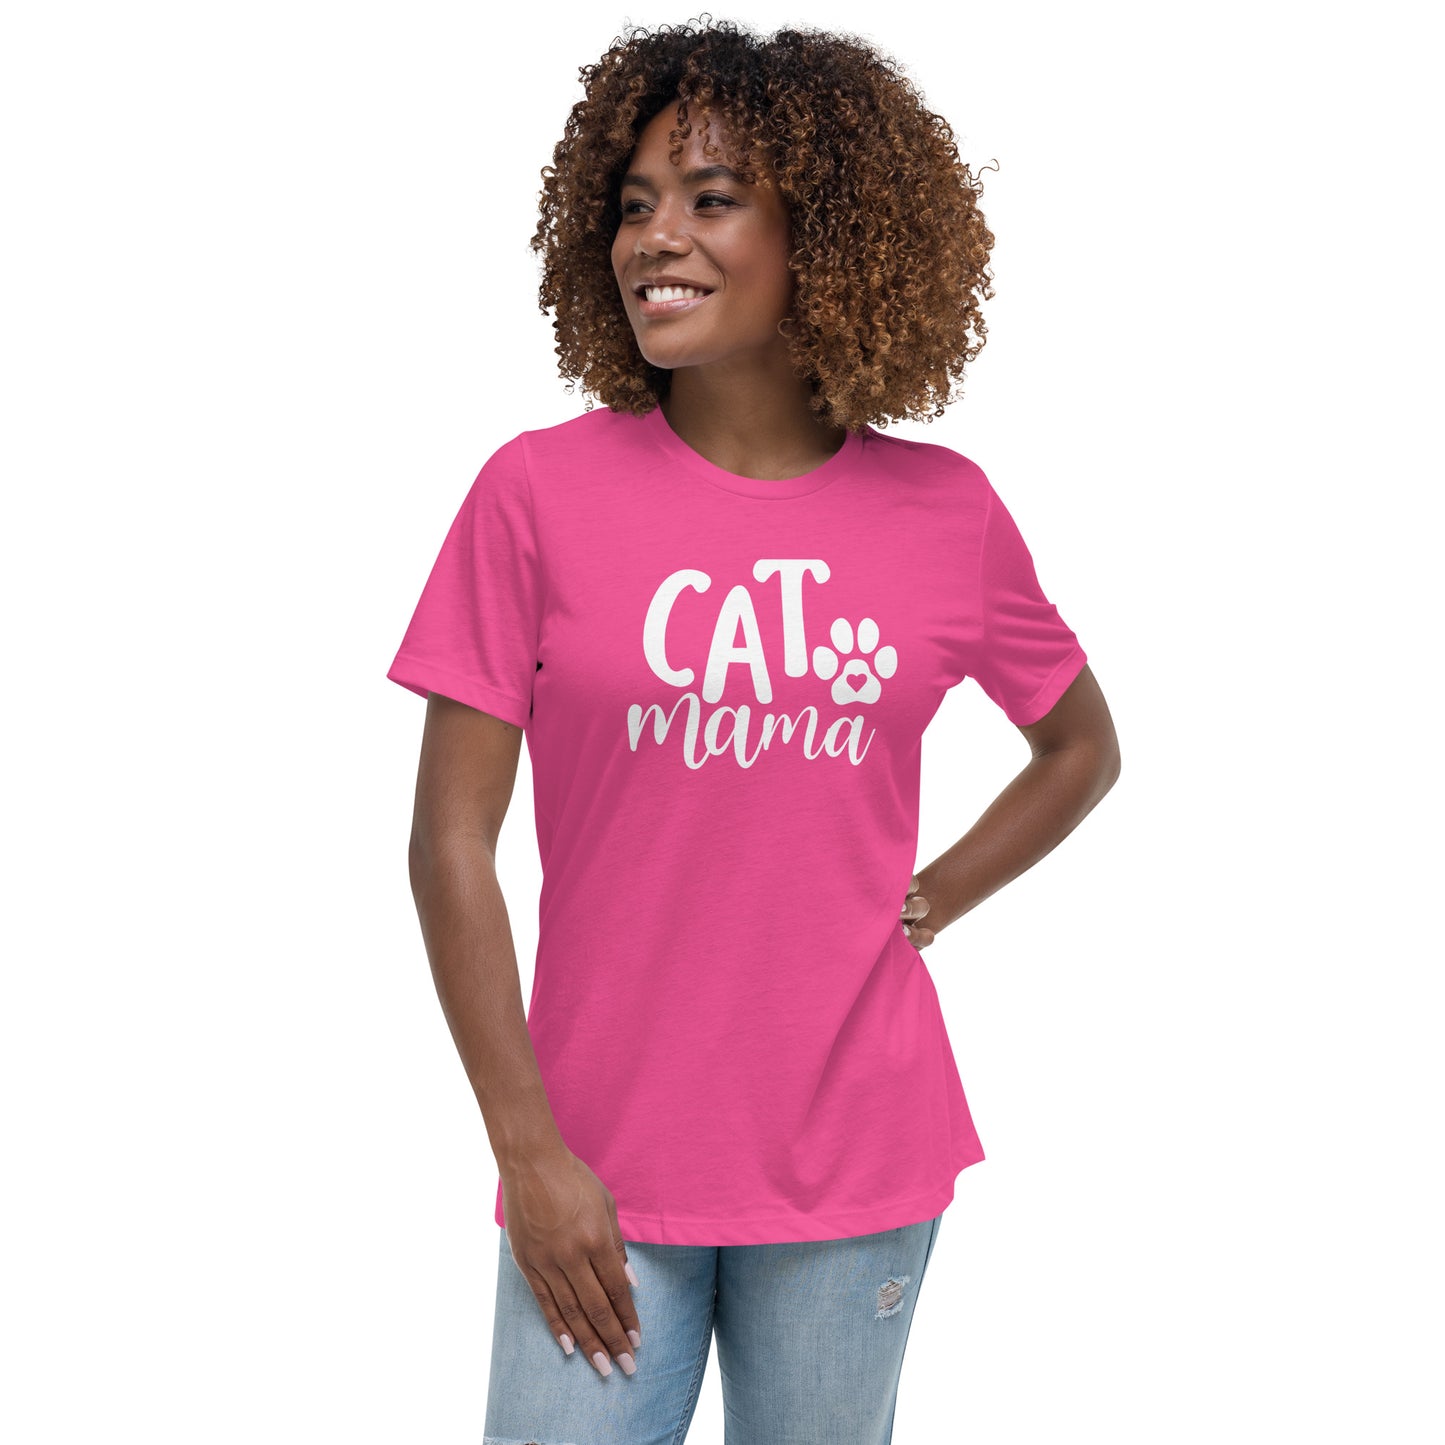 Cat Momma T-Shirt (Bella + Canvas 6400L)